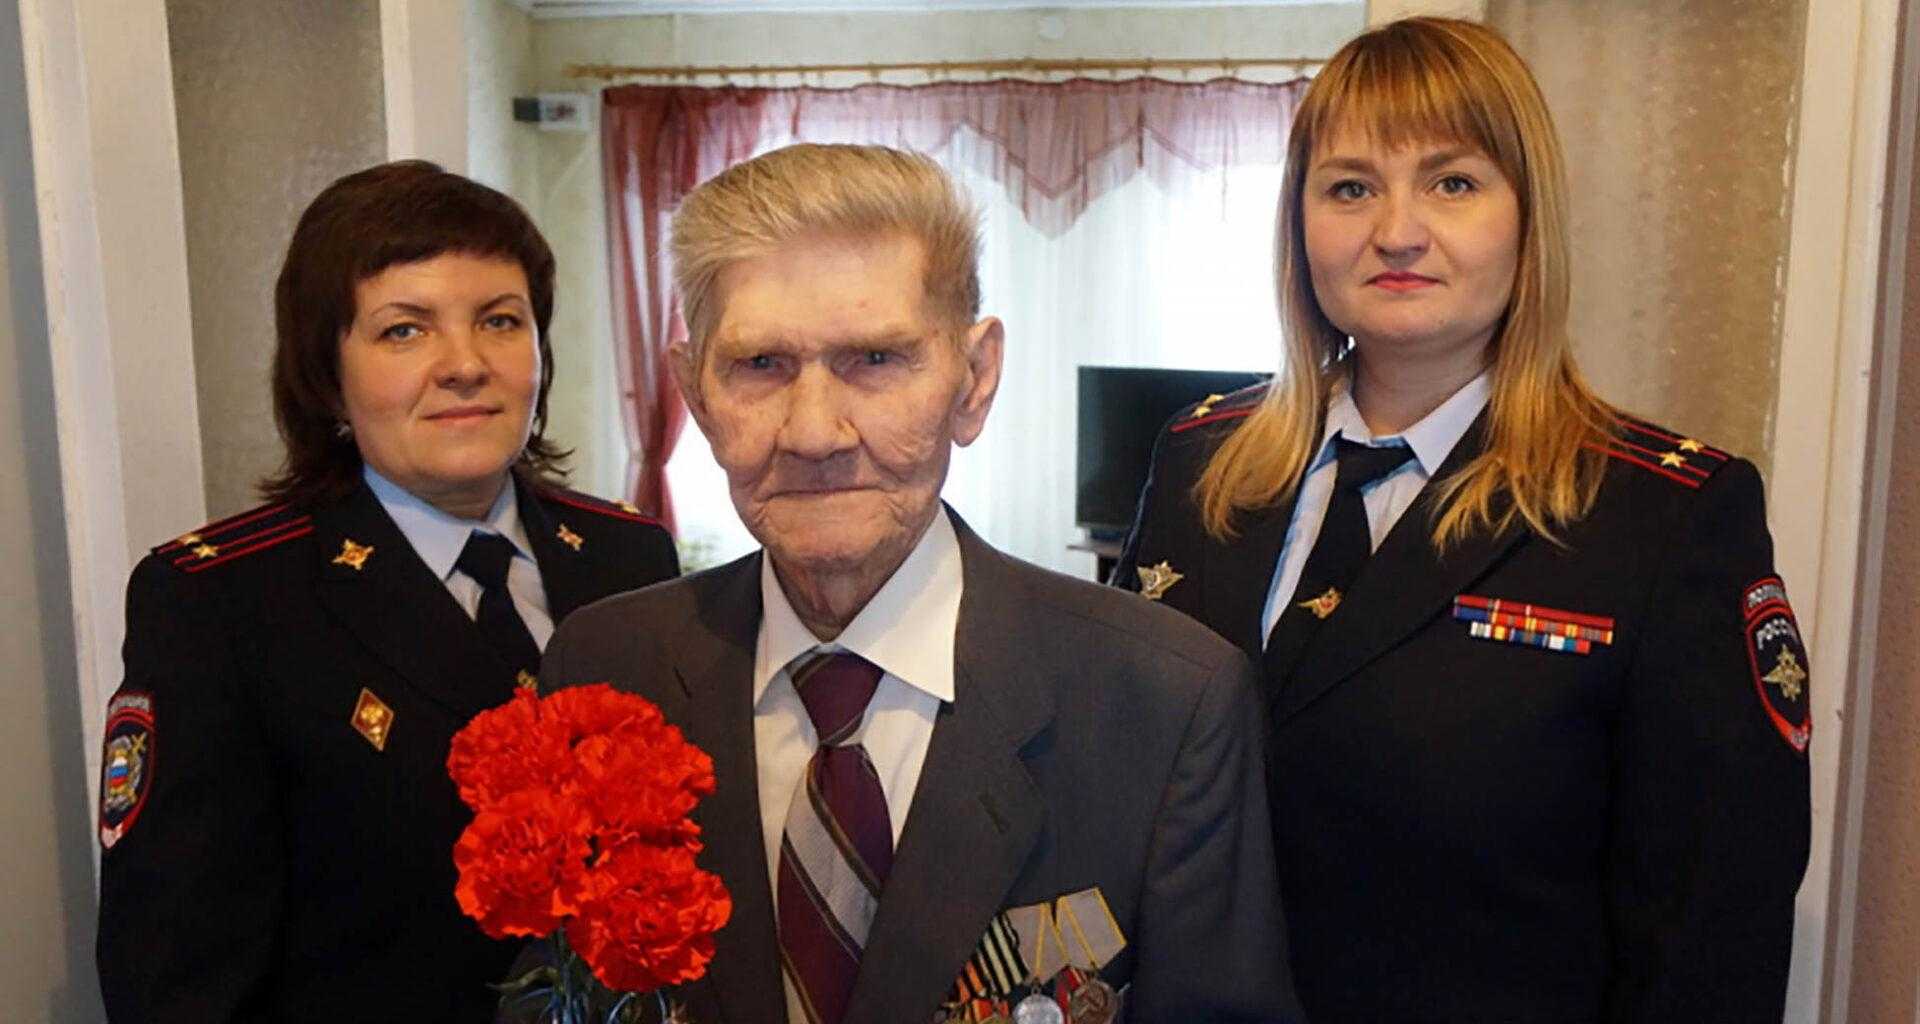 ветеран получил гражданство РФ